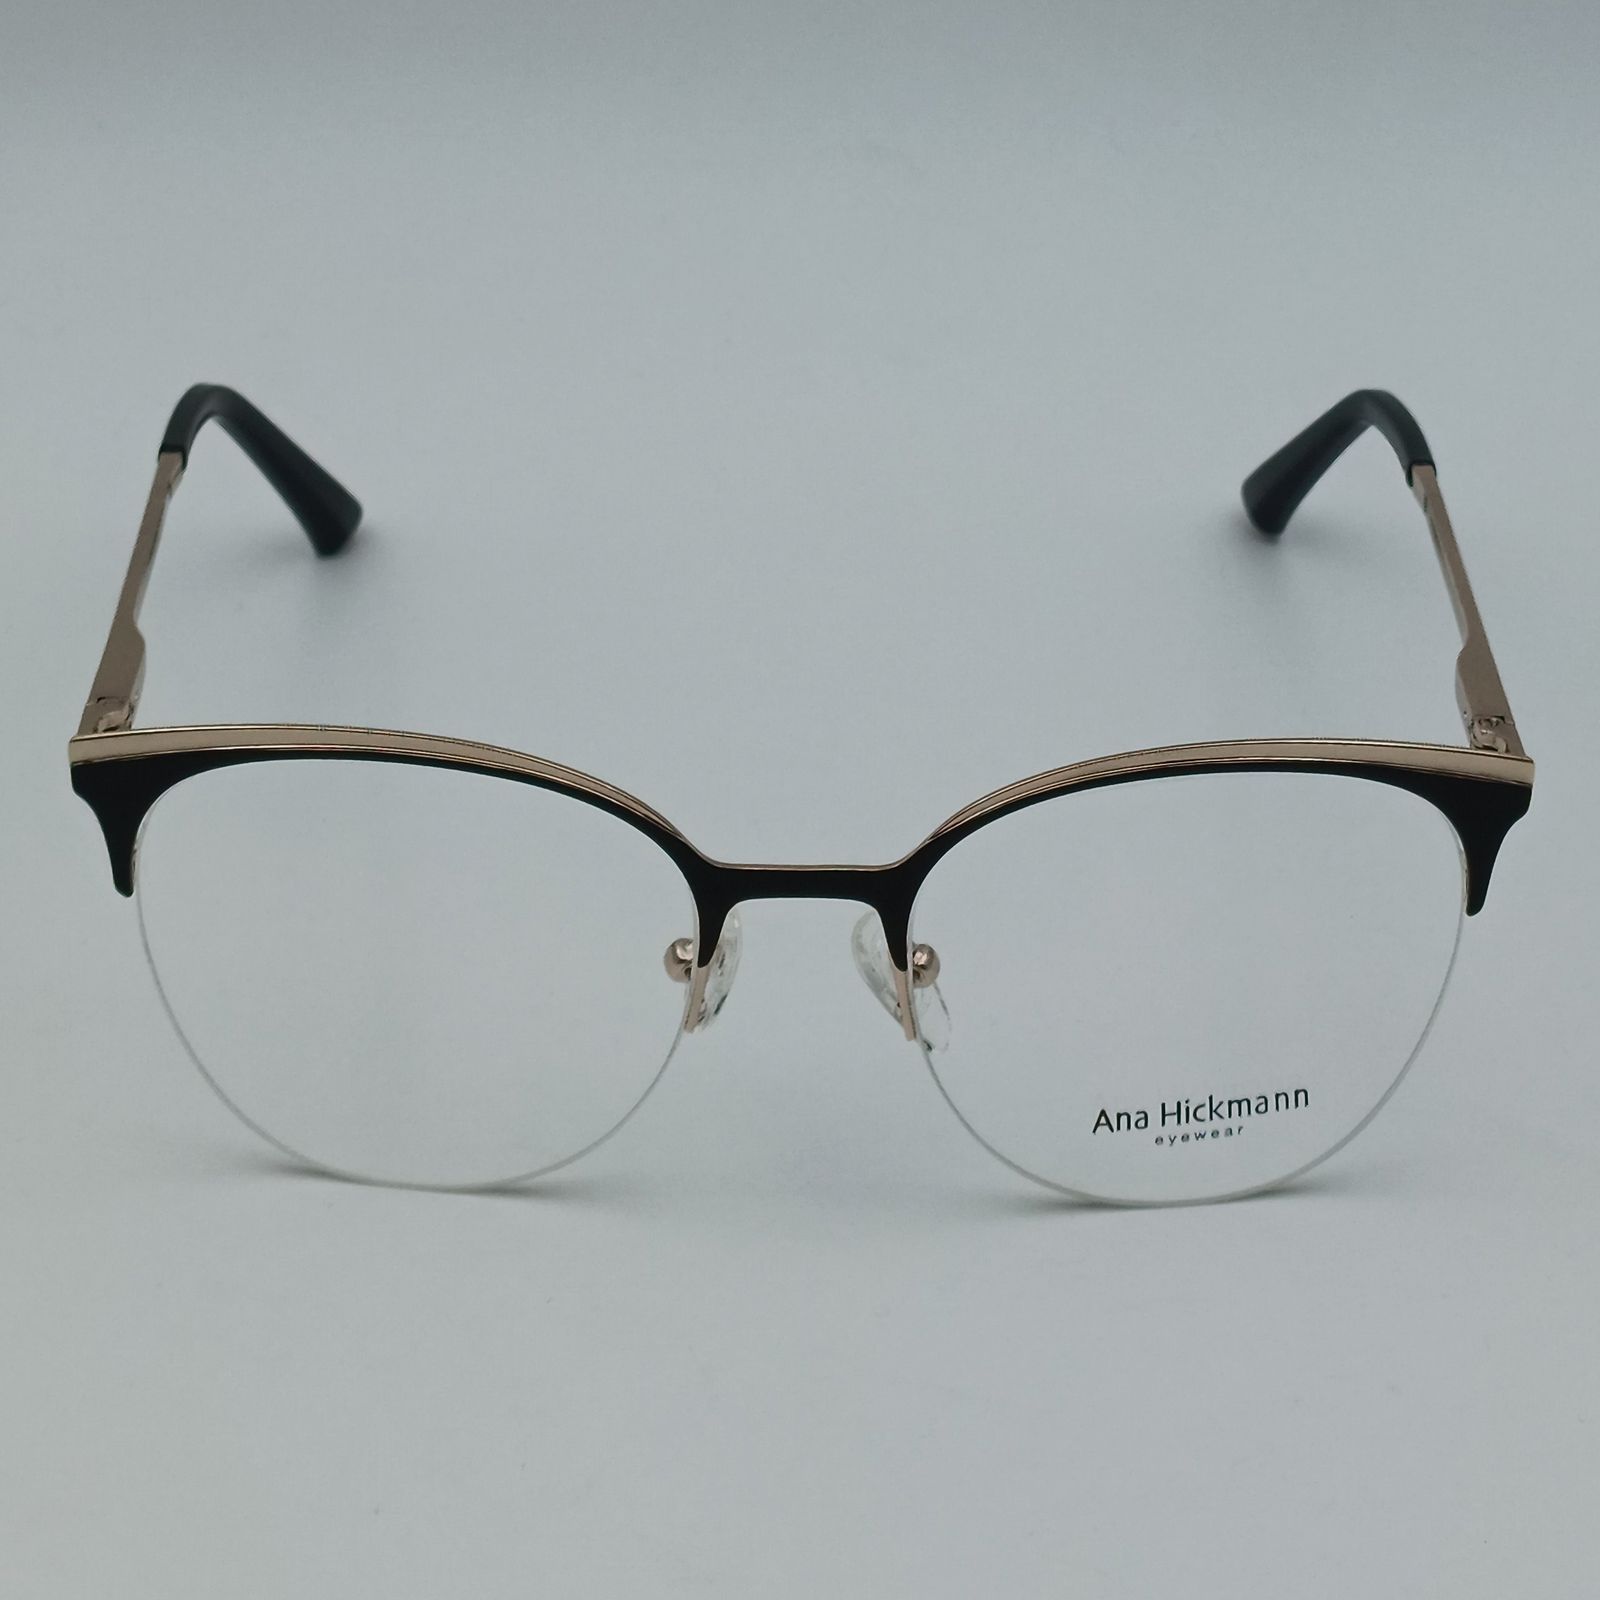 فریم عینک طبی زنانه آناهیکمن مدل FNA003 C1 به همراه کاور آفتابی -  - 3